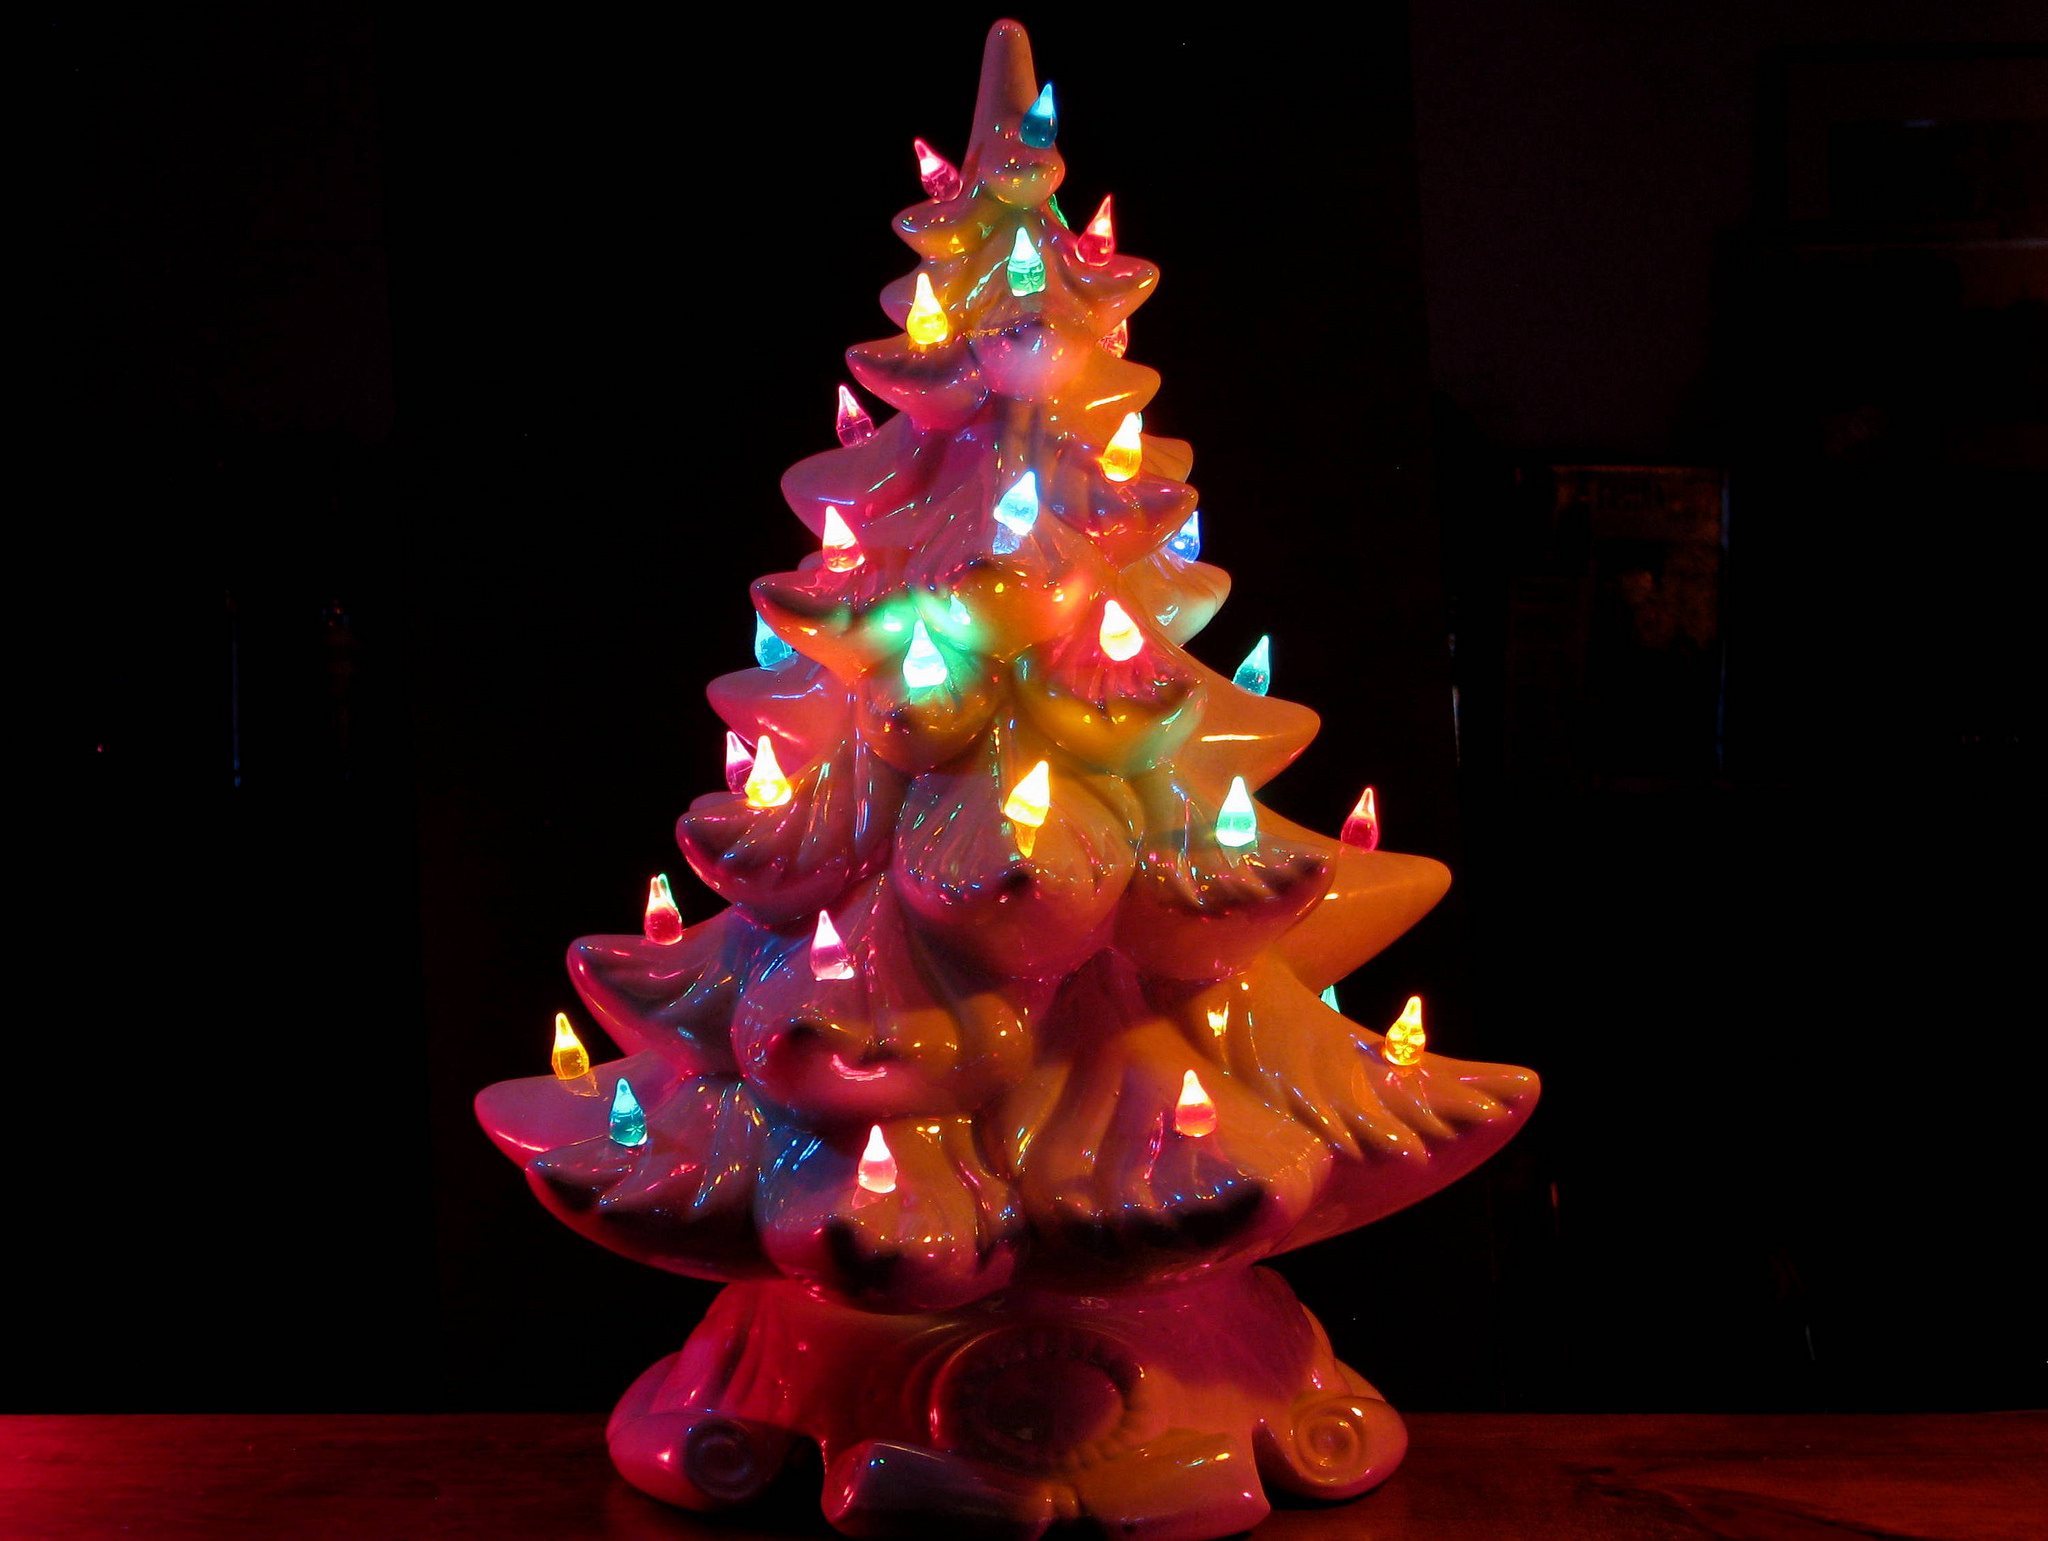 Ceramic Christmas tree by Greg-Marmai